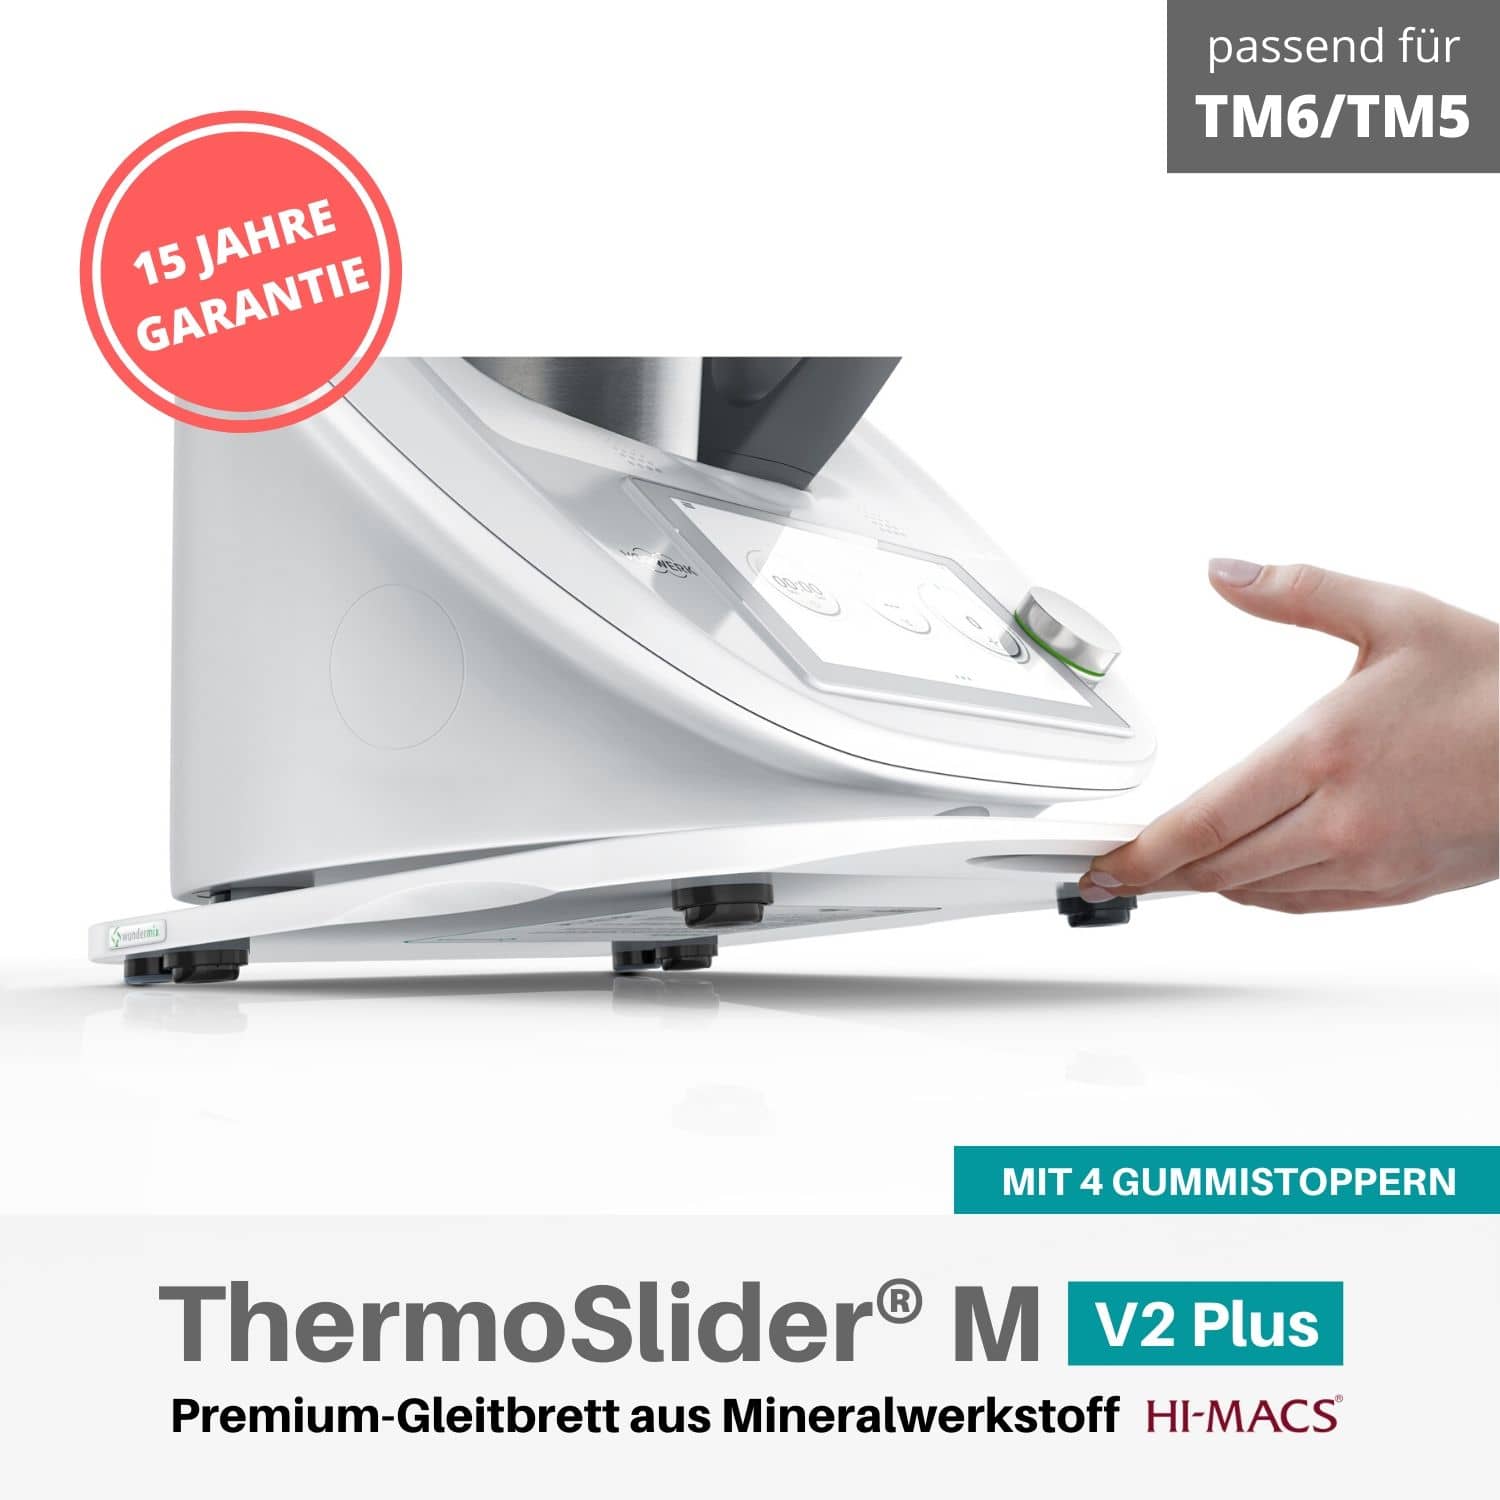 Thermoslider® M V2 plus alpine white Gleitbrett für den Thermomix TM6, TM5